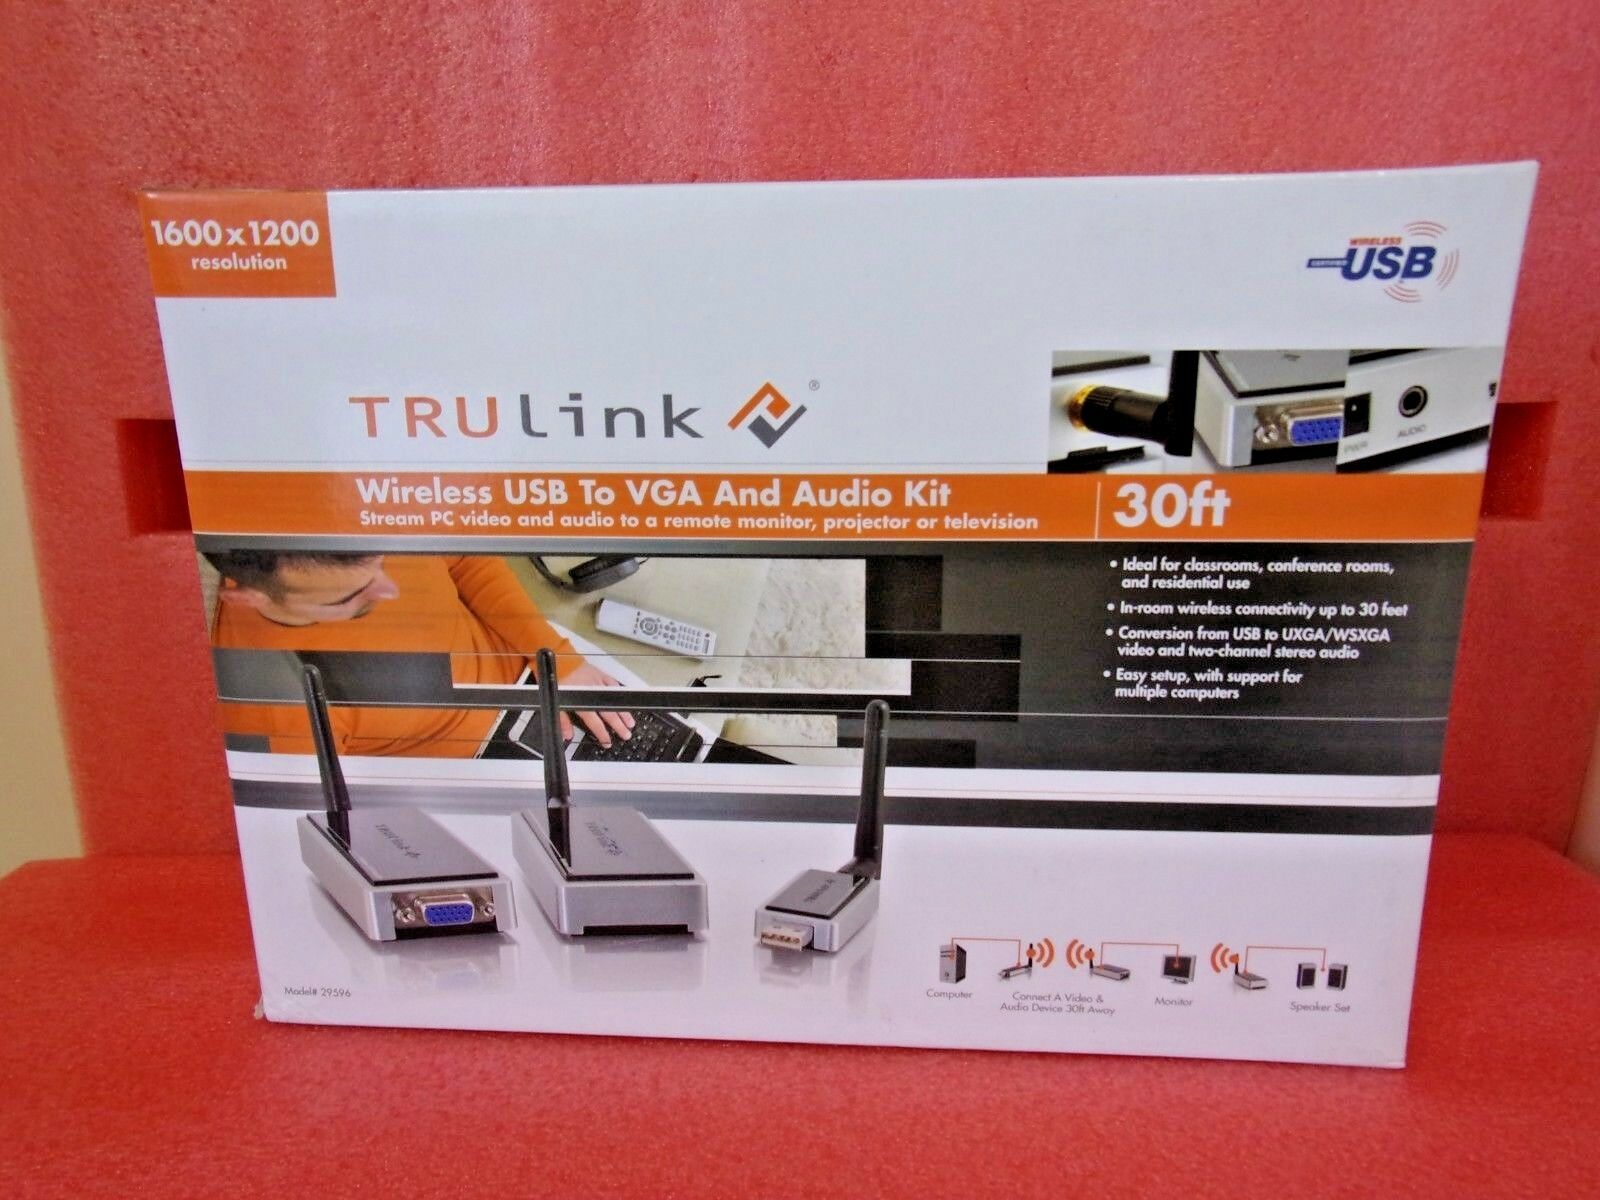 TRULink, 29596, Wireless USB a VGA y KIT de audio, 30 FT wireless range